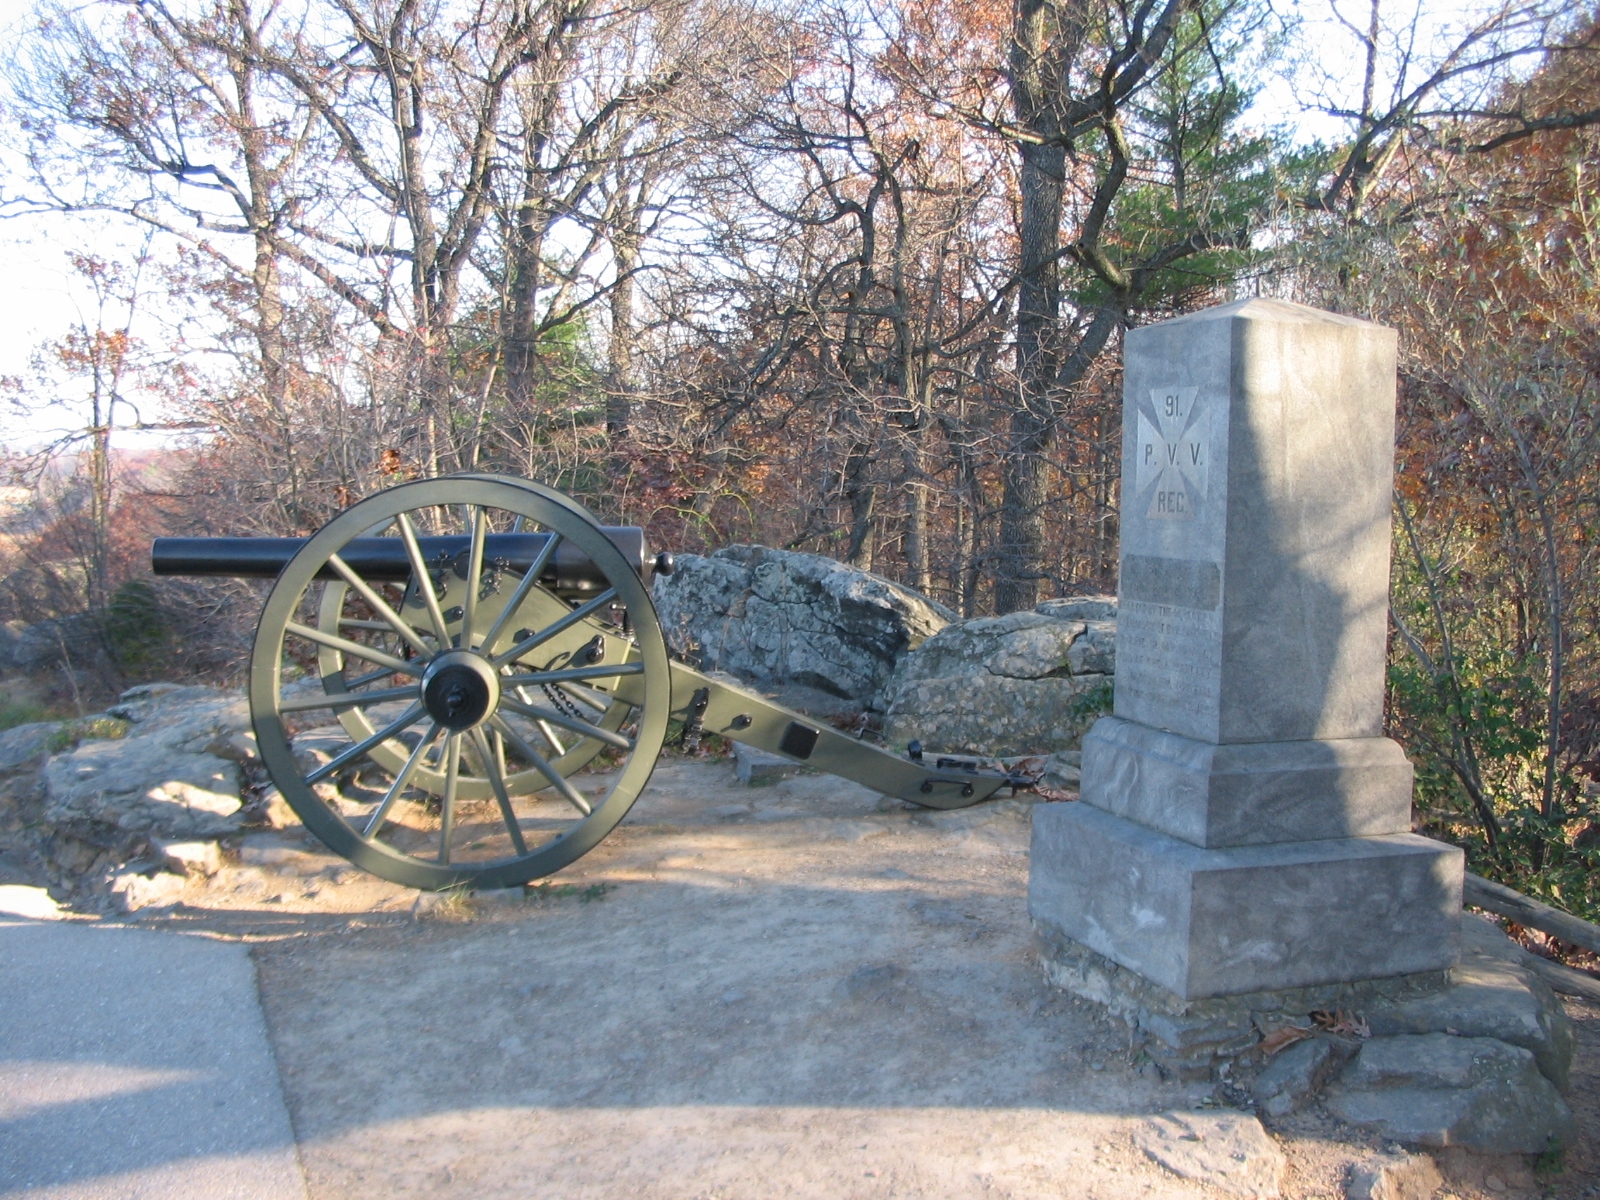 91st Pennsylvania Volunteer Regiment Monument